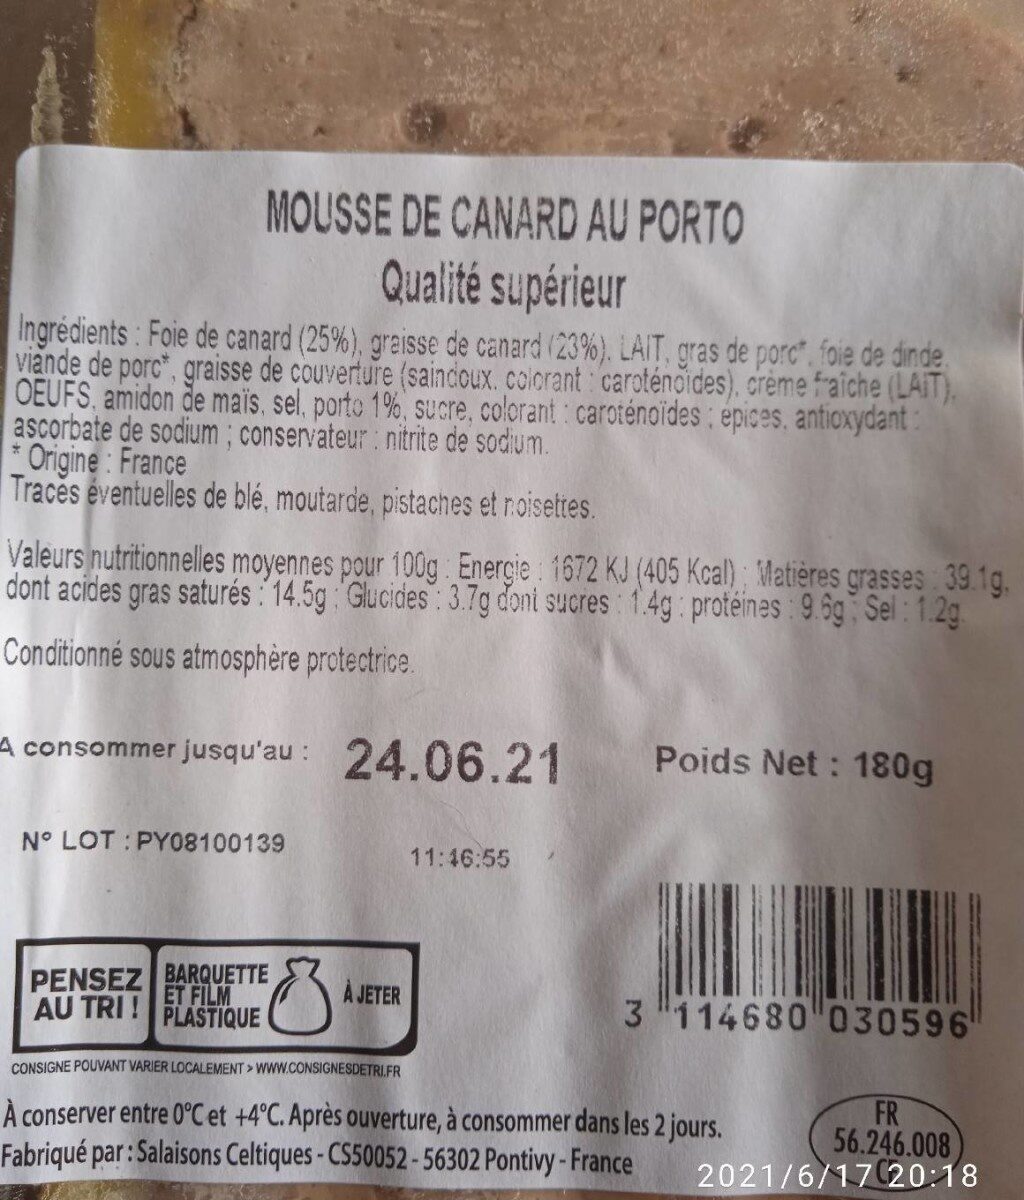 Mousse de canard au porto - Nutrition facts - fr